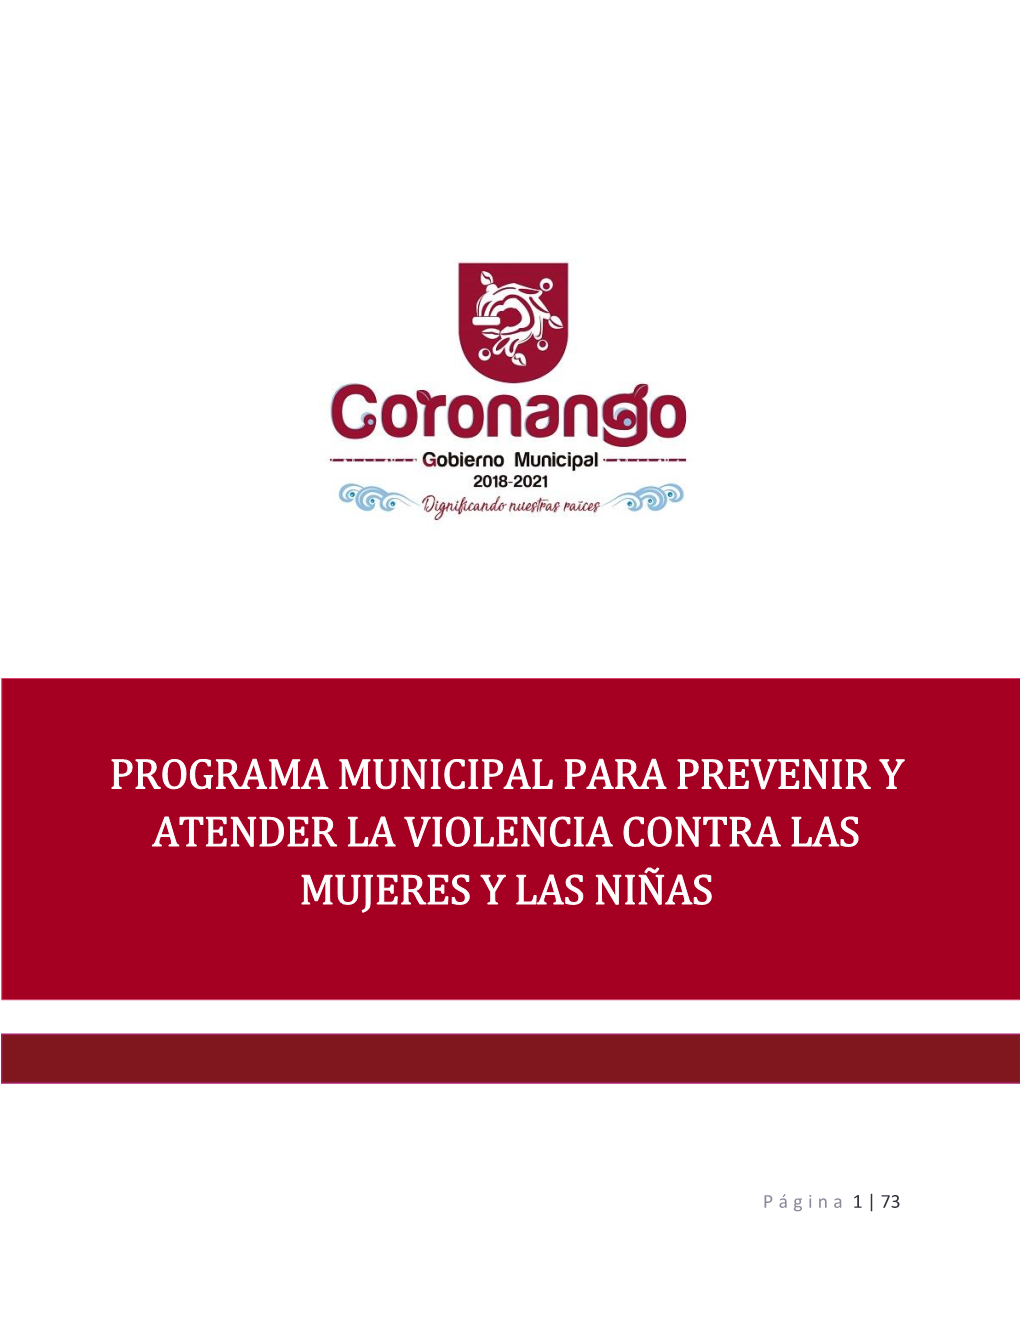 Programa Municipal Para Prevenir Y Atender La Violencia Contra Las Mujeres Y Las Niñas